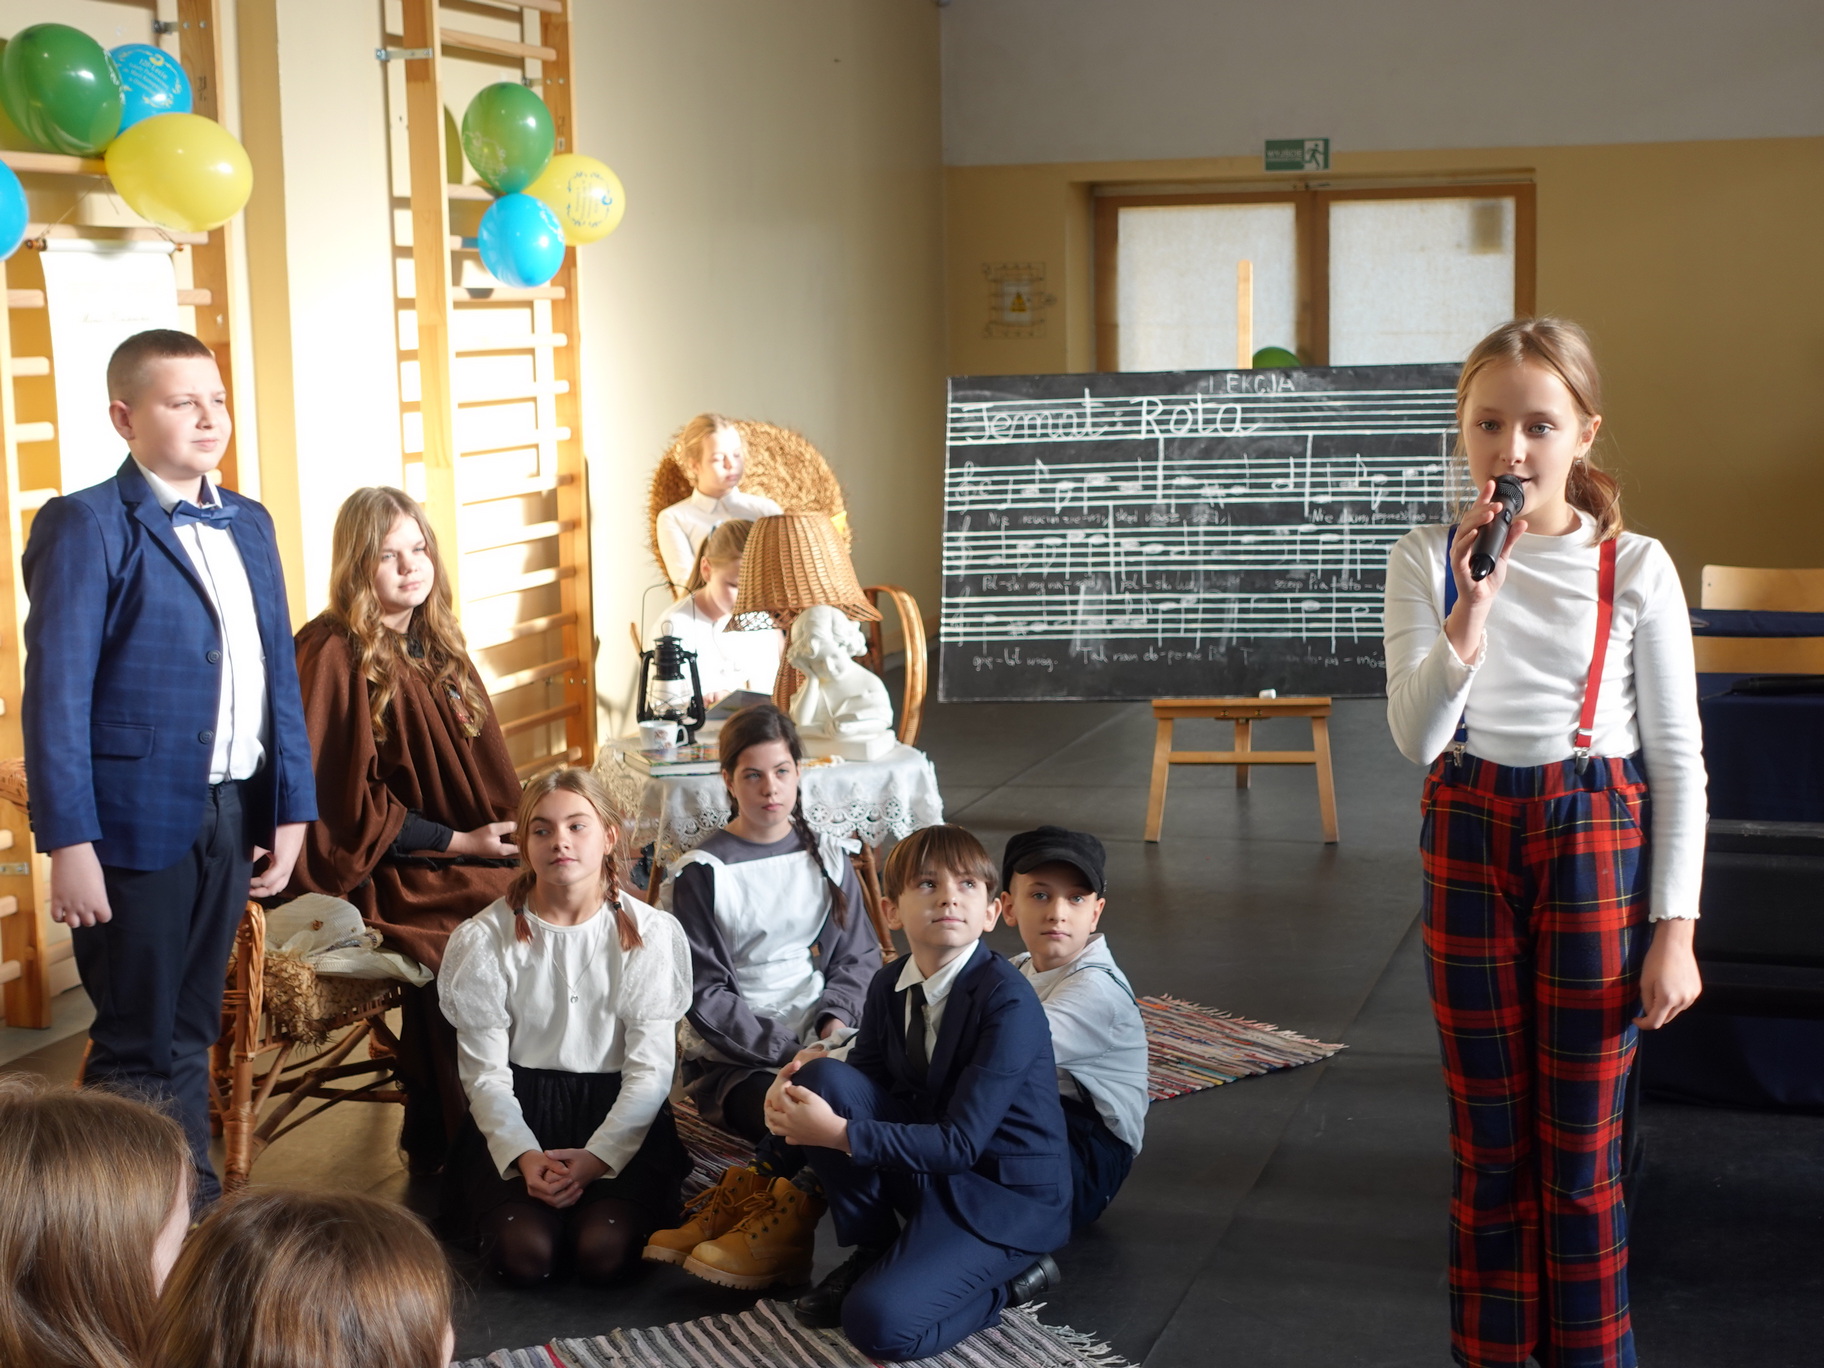 Przedstawienia i śpiewy wykonane przez uczniów szkoły.